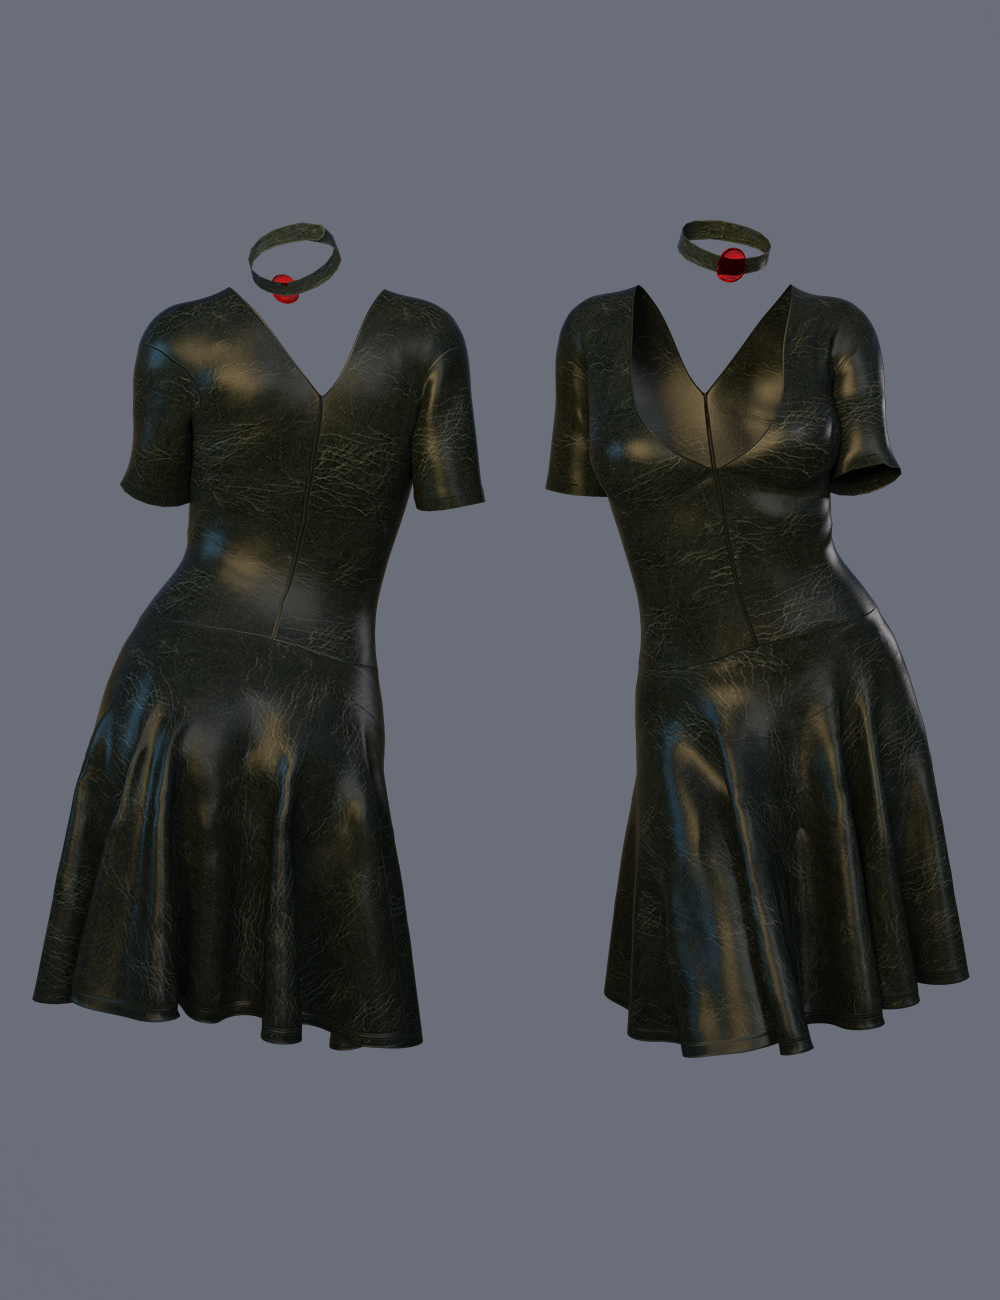 dForce Ayden Dress for Genesis 8 Females by: Nelmi, 3D Models by Daz 3D